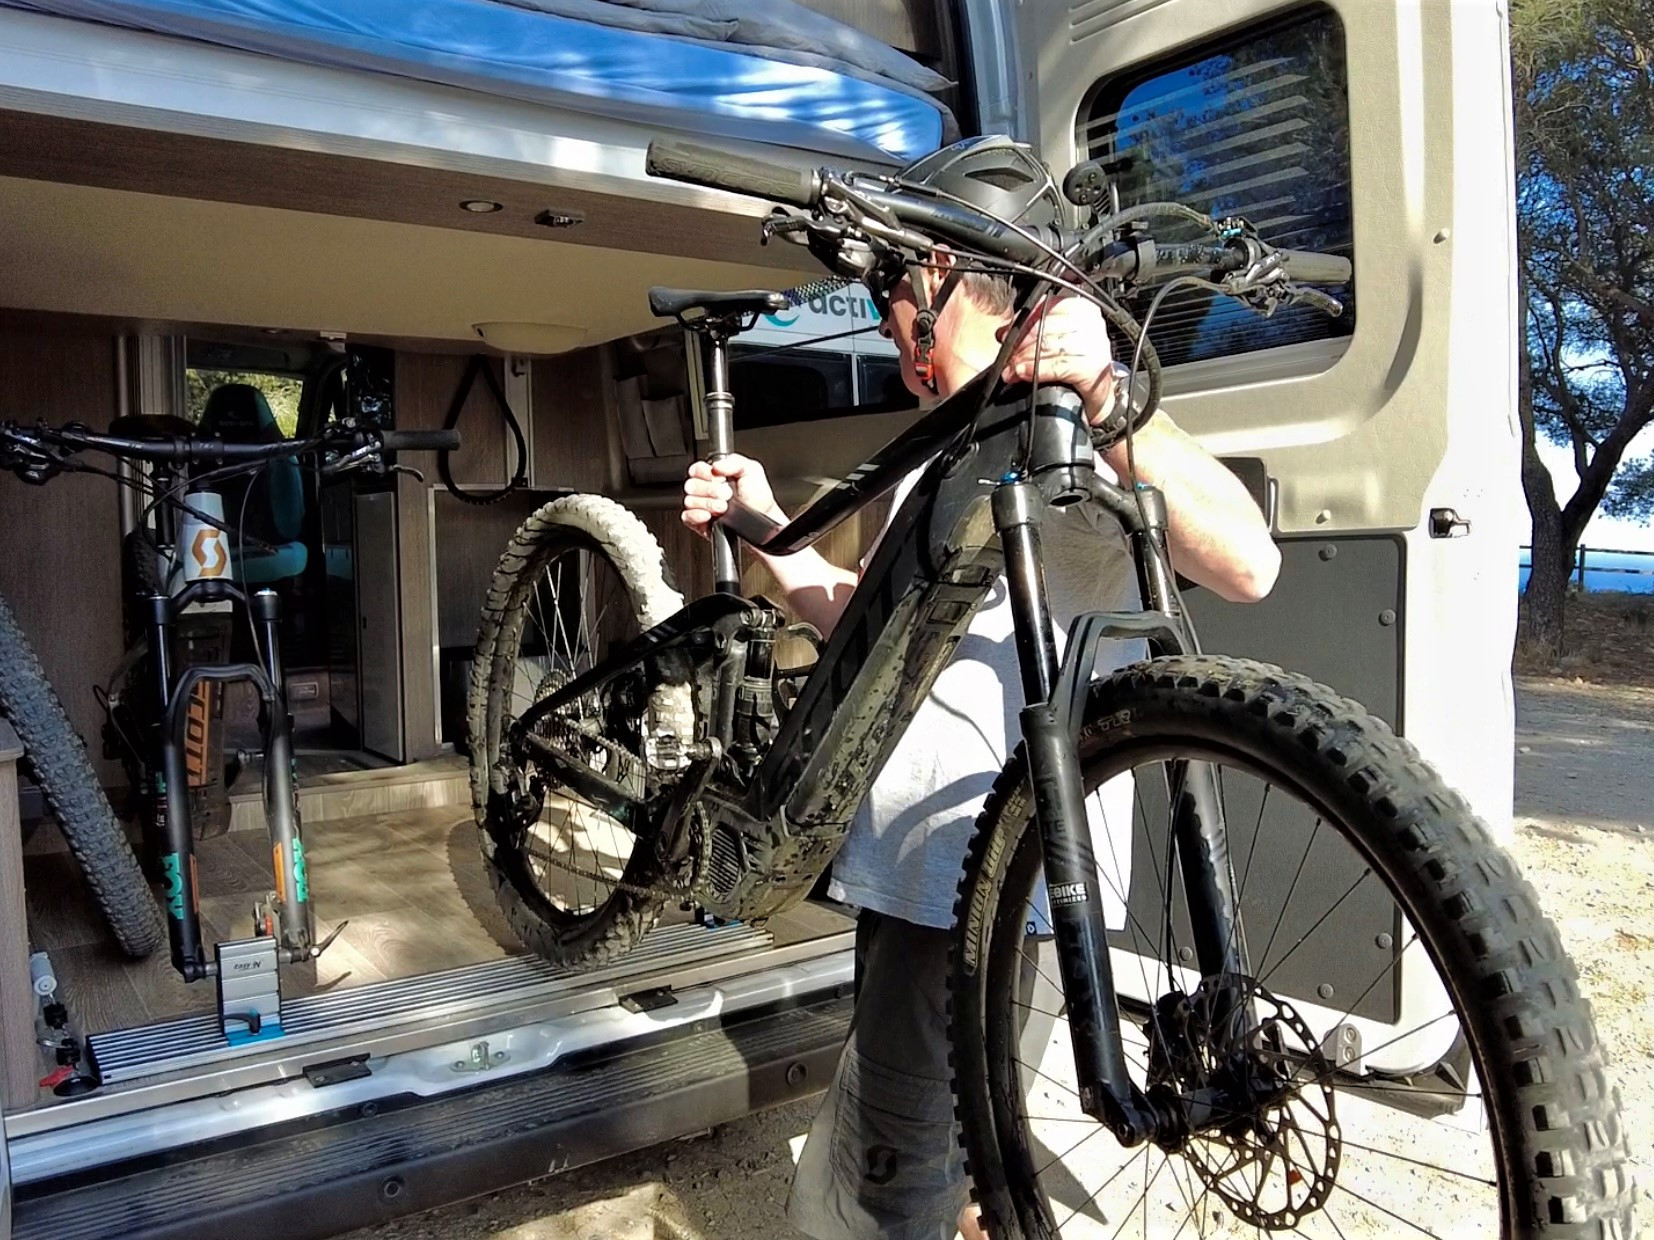 Guardar les bicicletes dins de la furgoneta camper